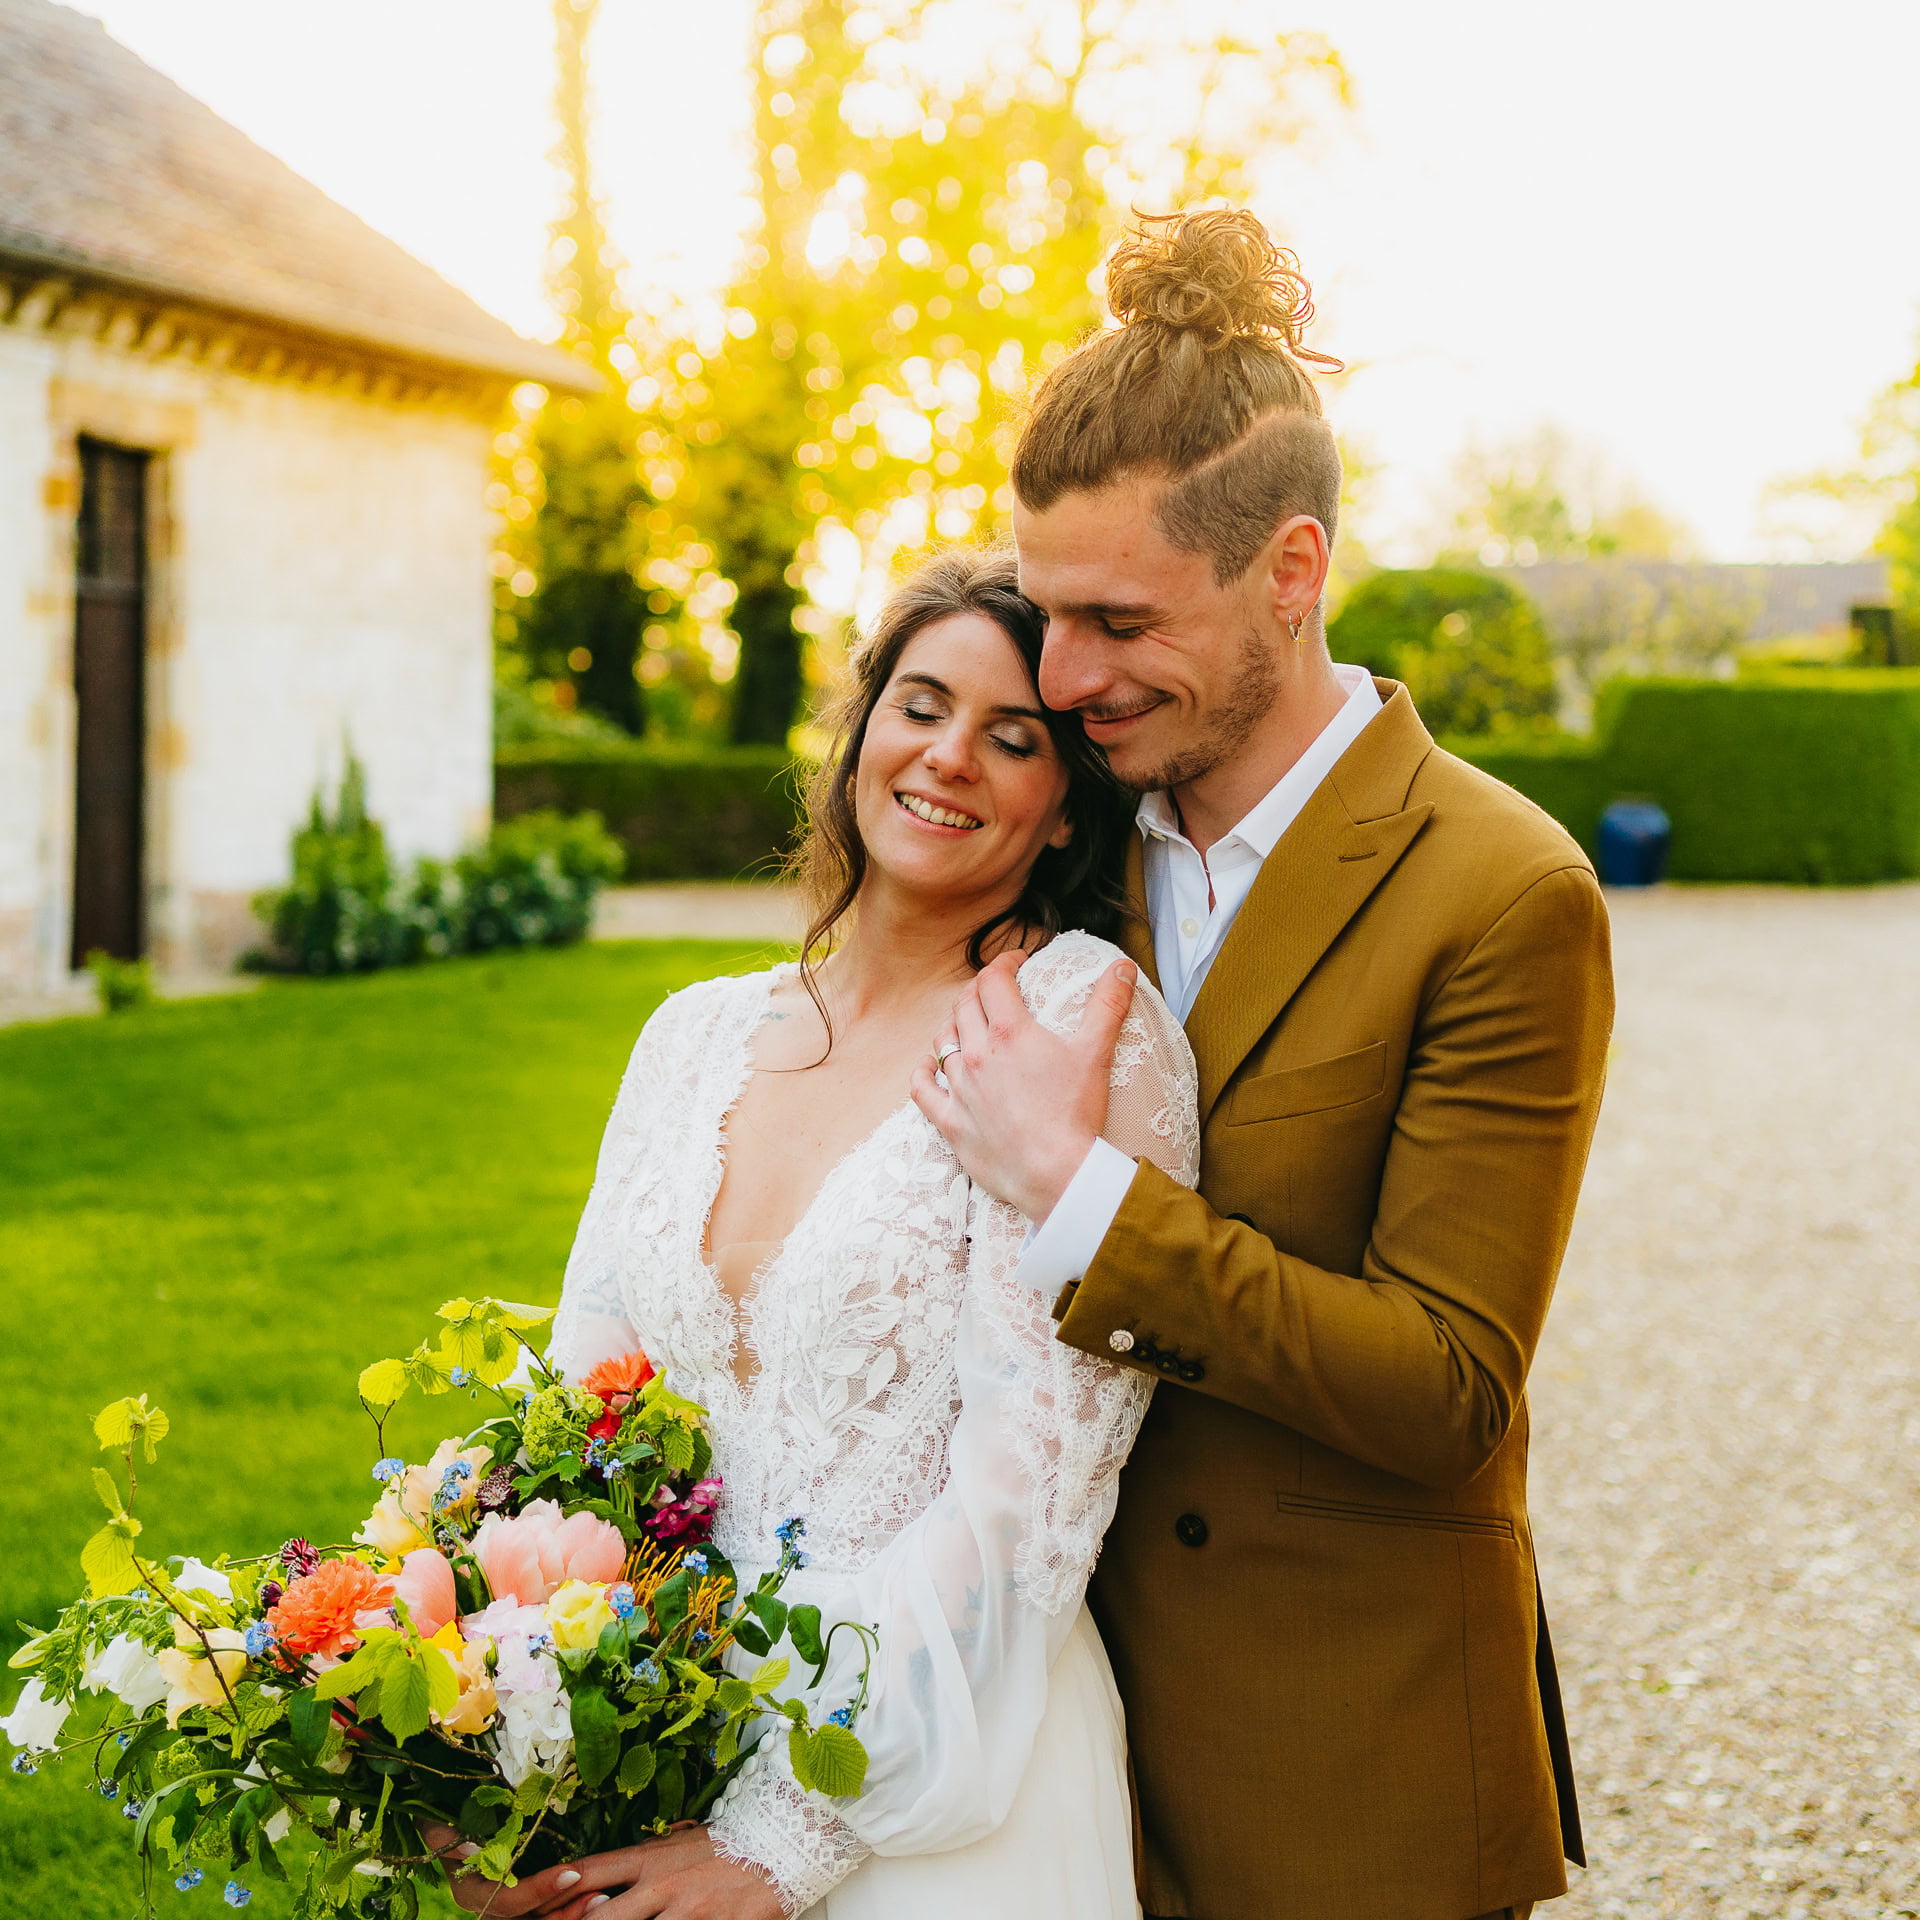 Un couple de jeunes mariés souriant et s'embrassant à l'extérieur, la mariée tenant un bouquet coloré, avec une douce lumière du soleil filtrant à travers les arbres en arrière-plan.